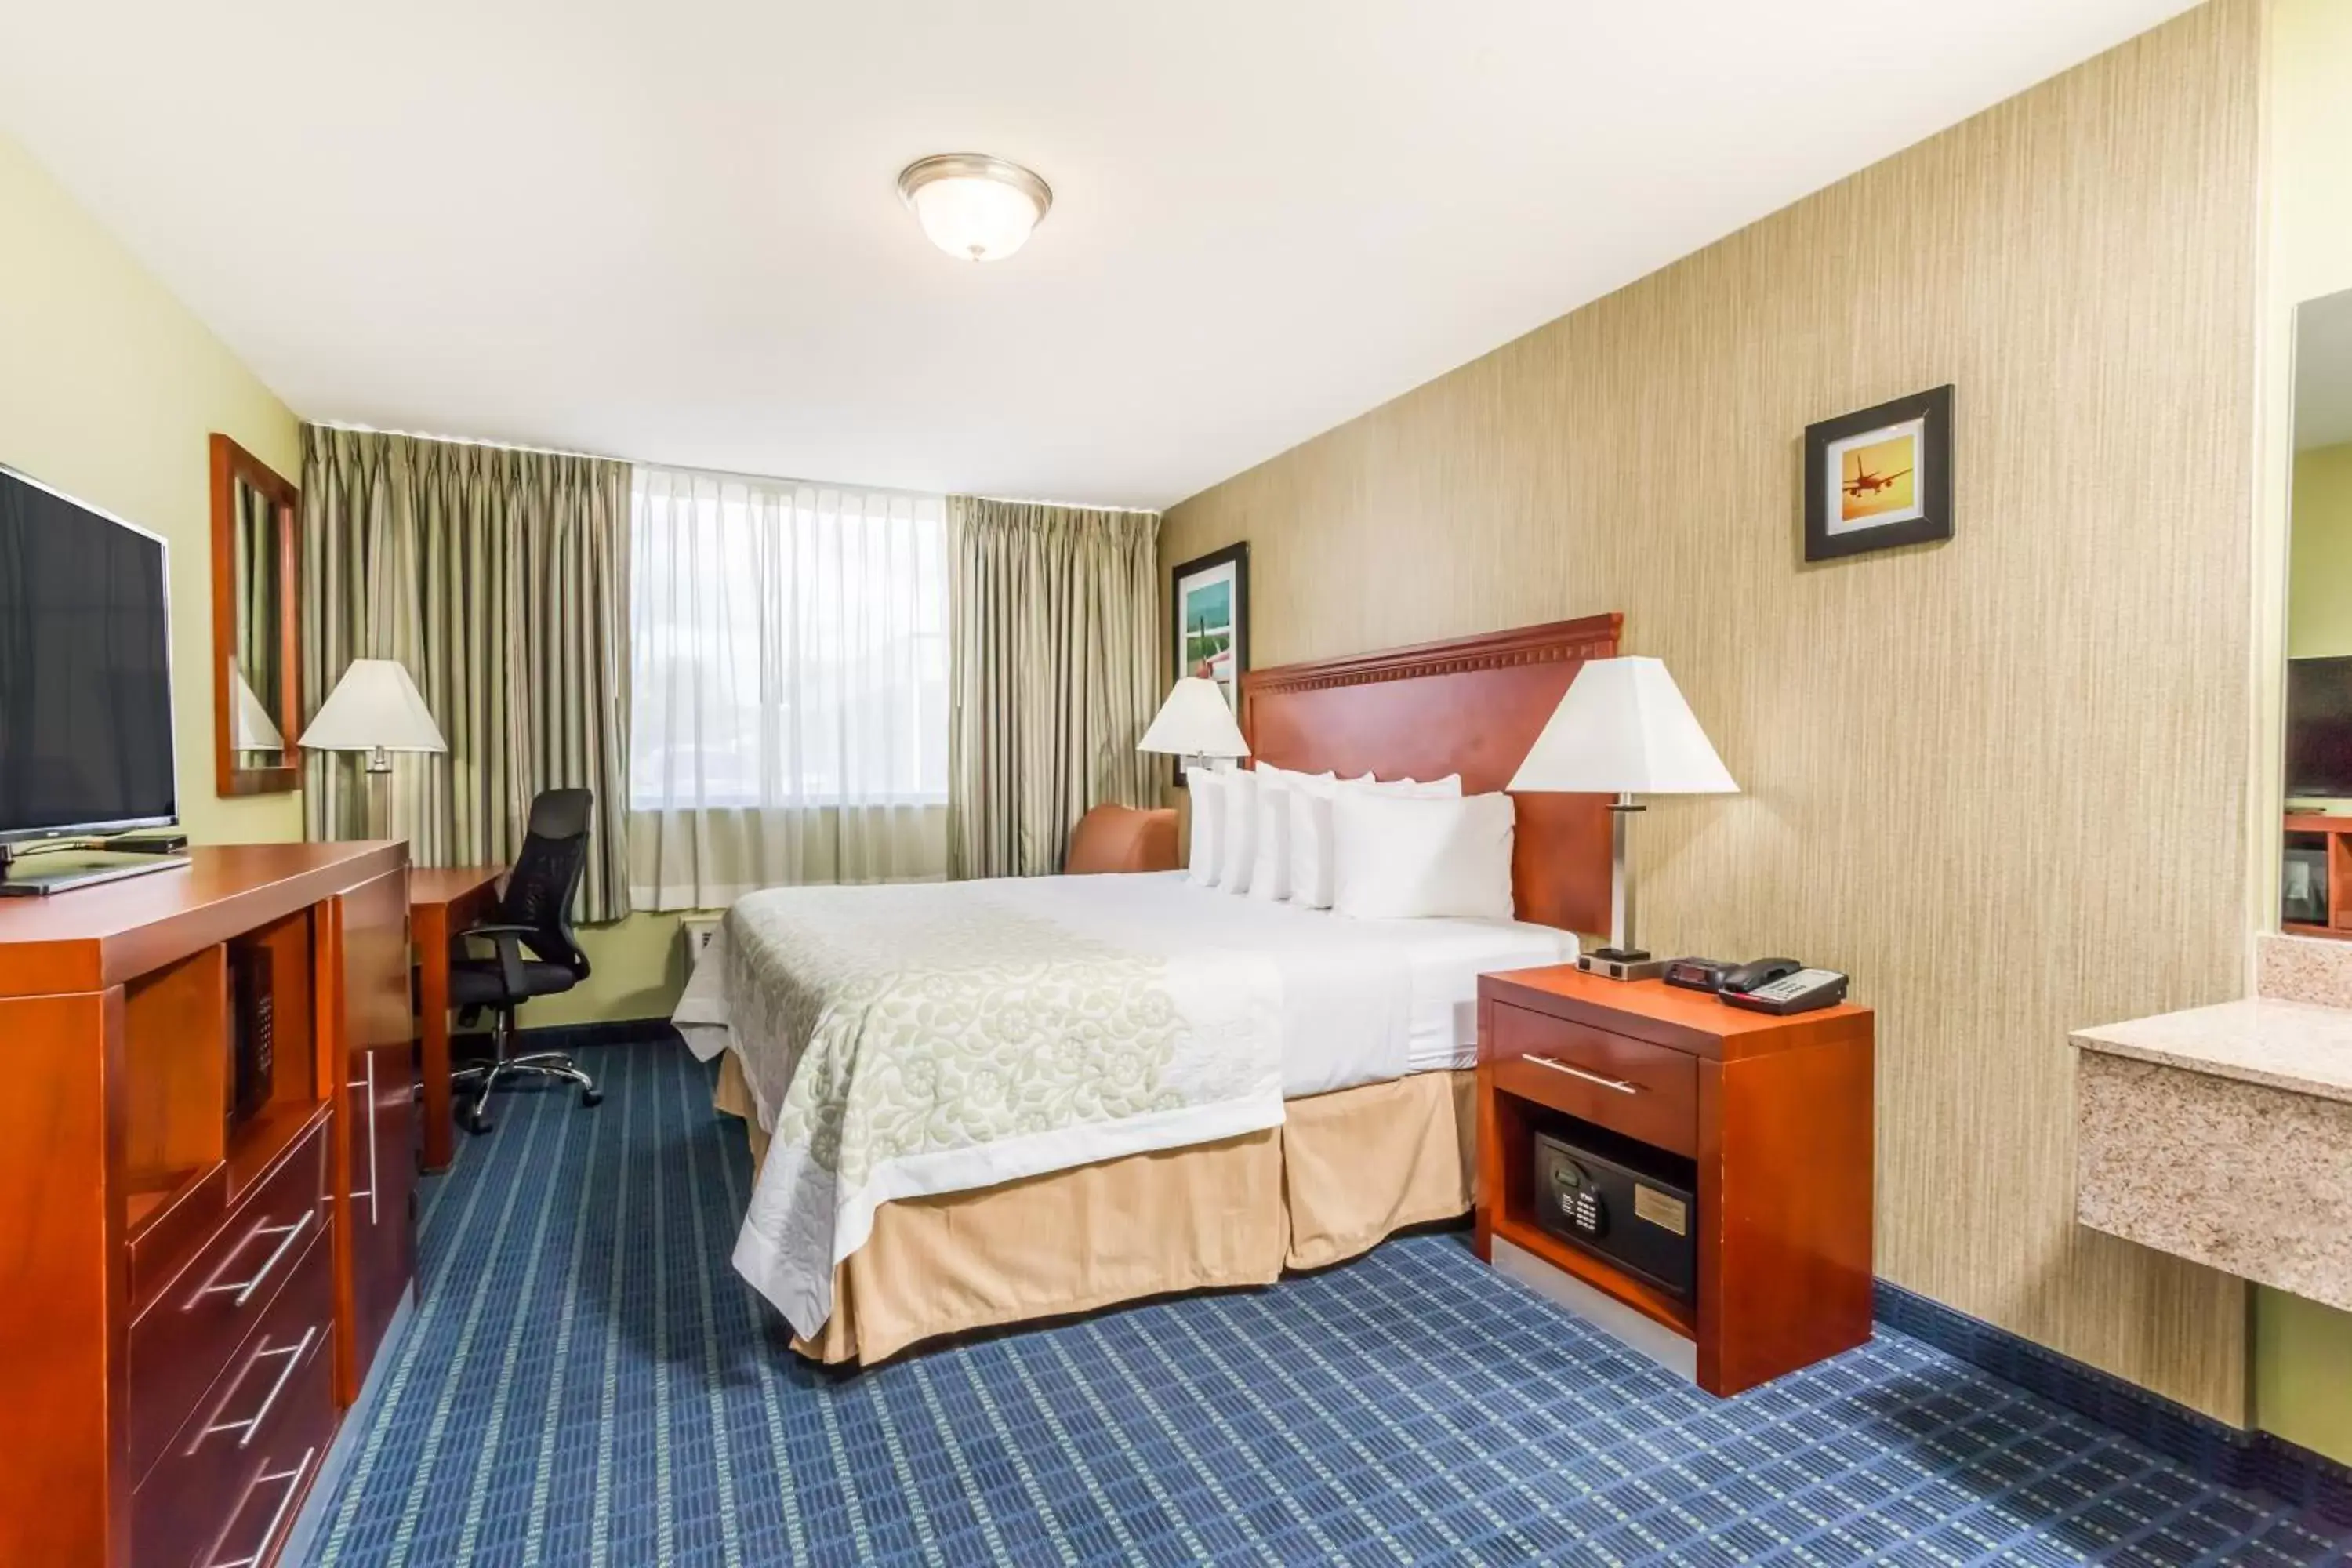 Bedroom, Bed in Days Inn by Wyndham Windsor Locks / Bradley Intl Airport